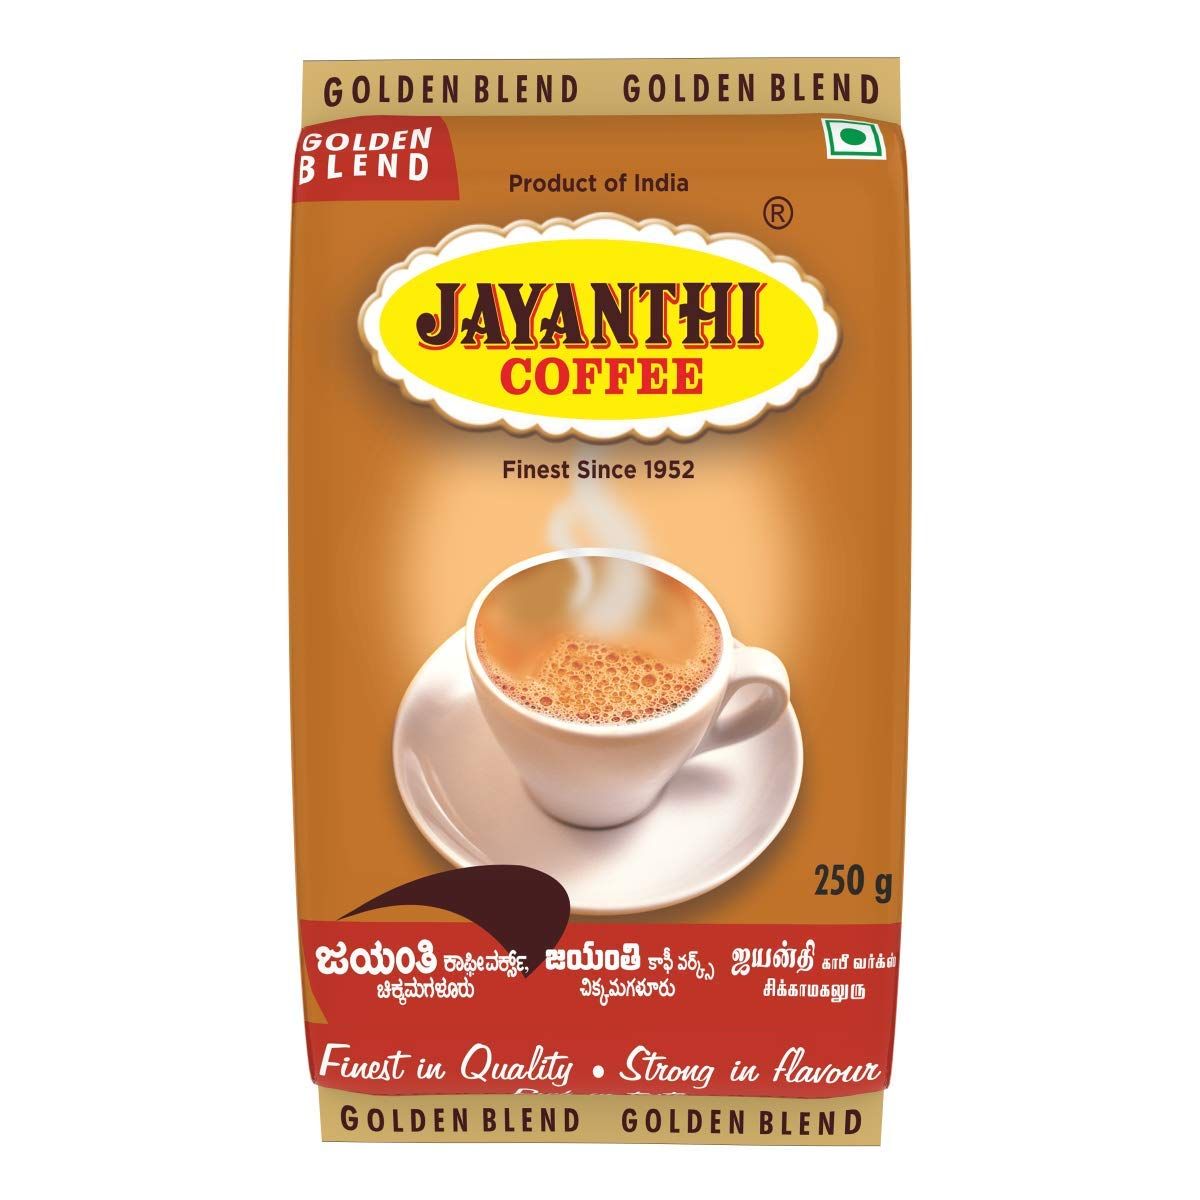 Jayanthi Golden Blend Coffee Image